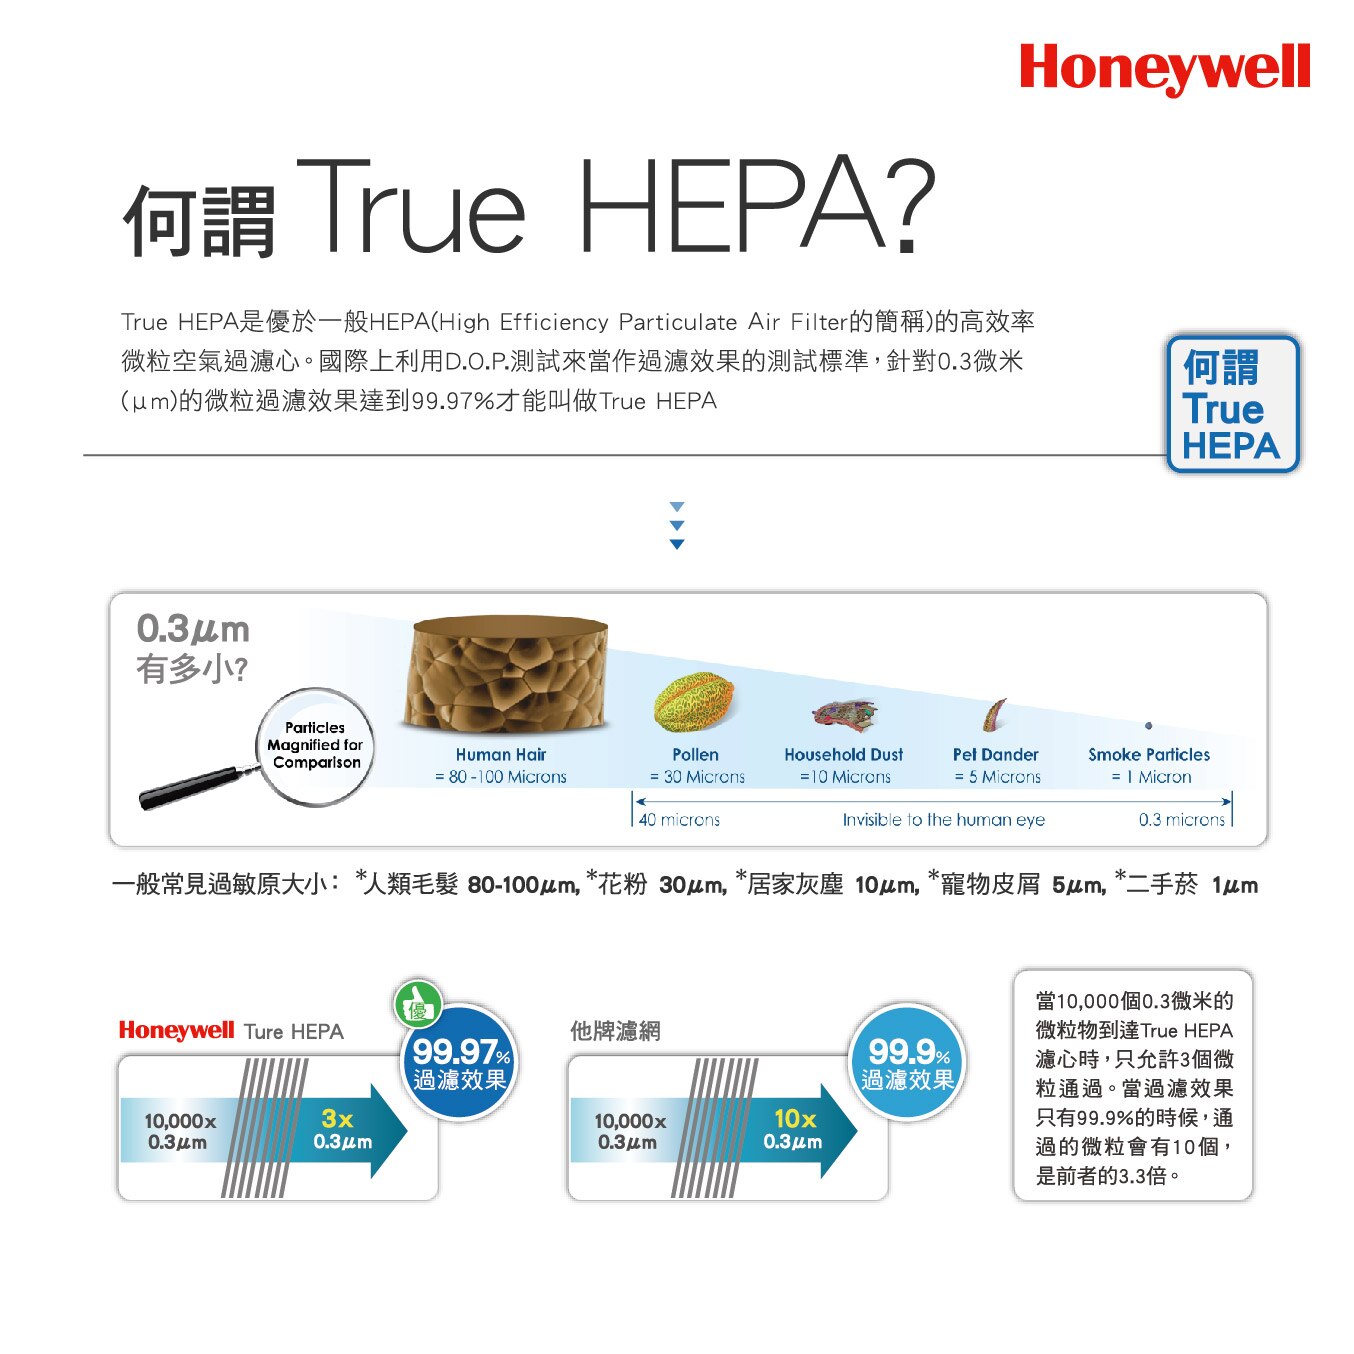 Honeywell 空氣清淨機使用True HEPA高效率空氣過濾心,可過濾毛髮,花粉,灰塵,寵物皮屑,二手菸。